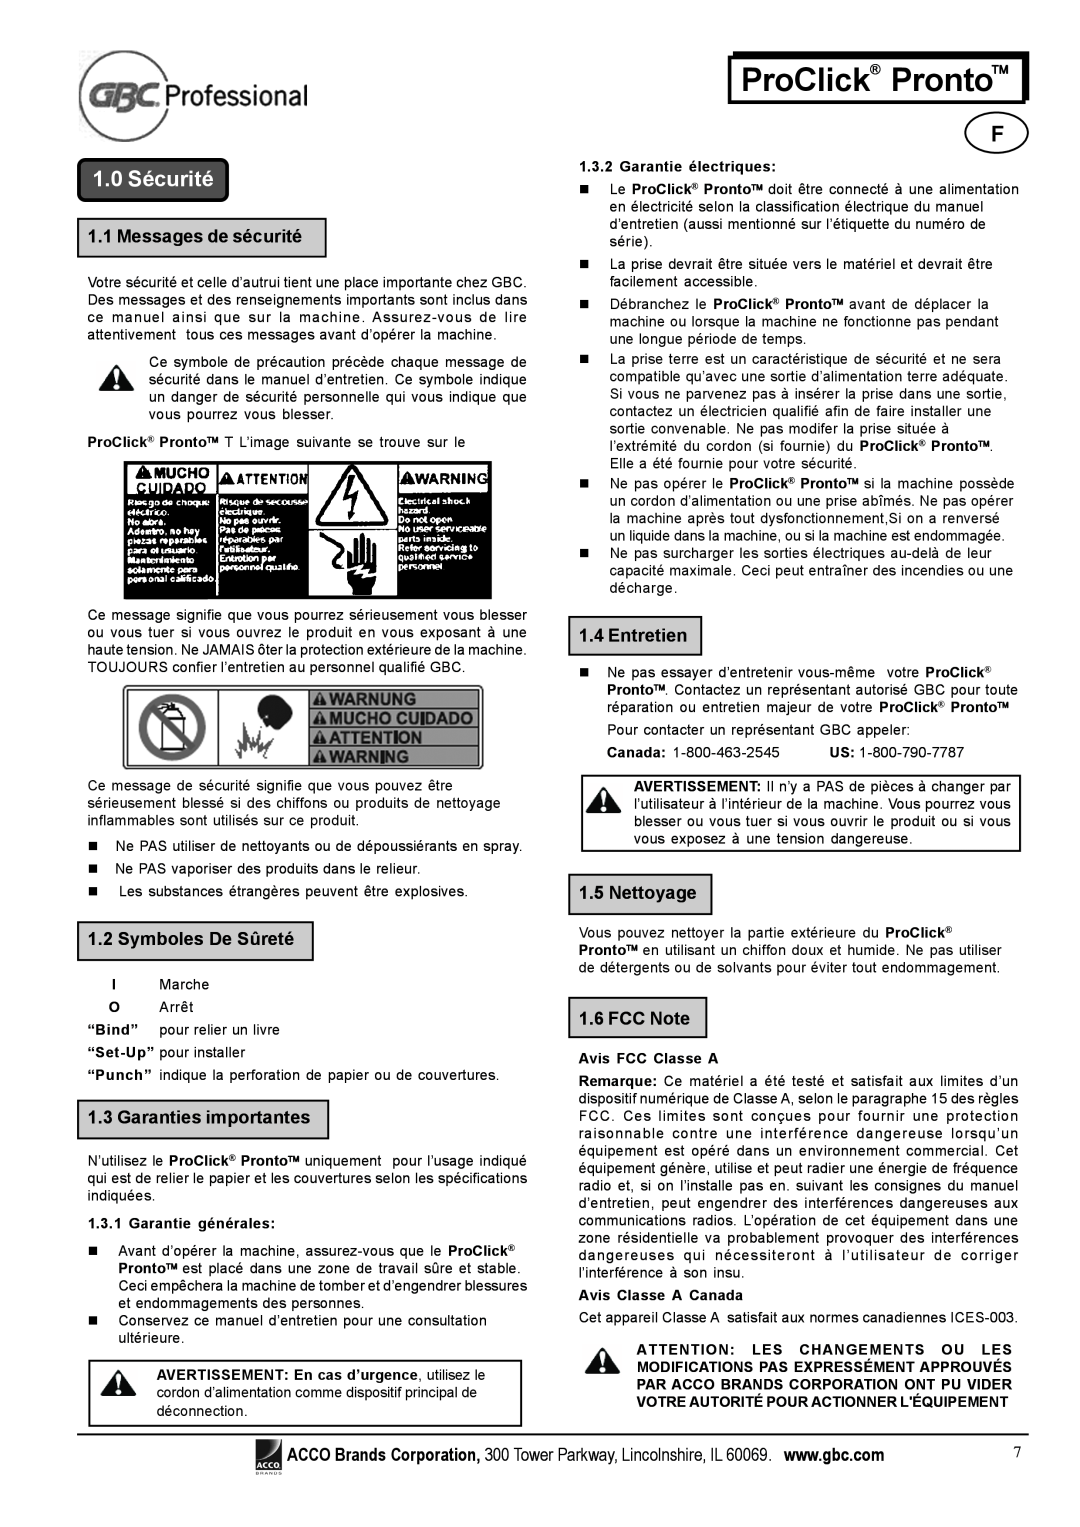 Tamron P2000 1.0 Sécurité, Messages de sécurité, Symboles De Sûreté, Garanties importantes, Entretien, Nettoyage, FCC Note 